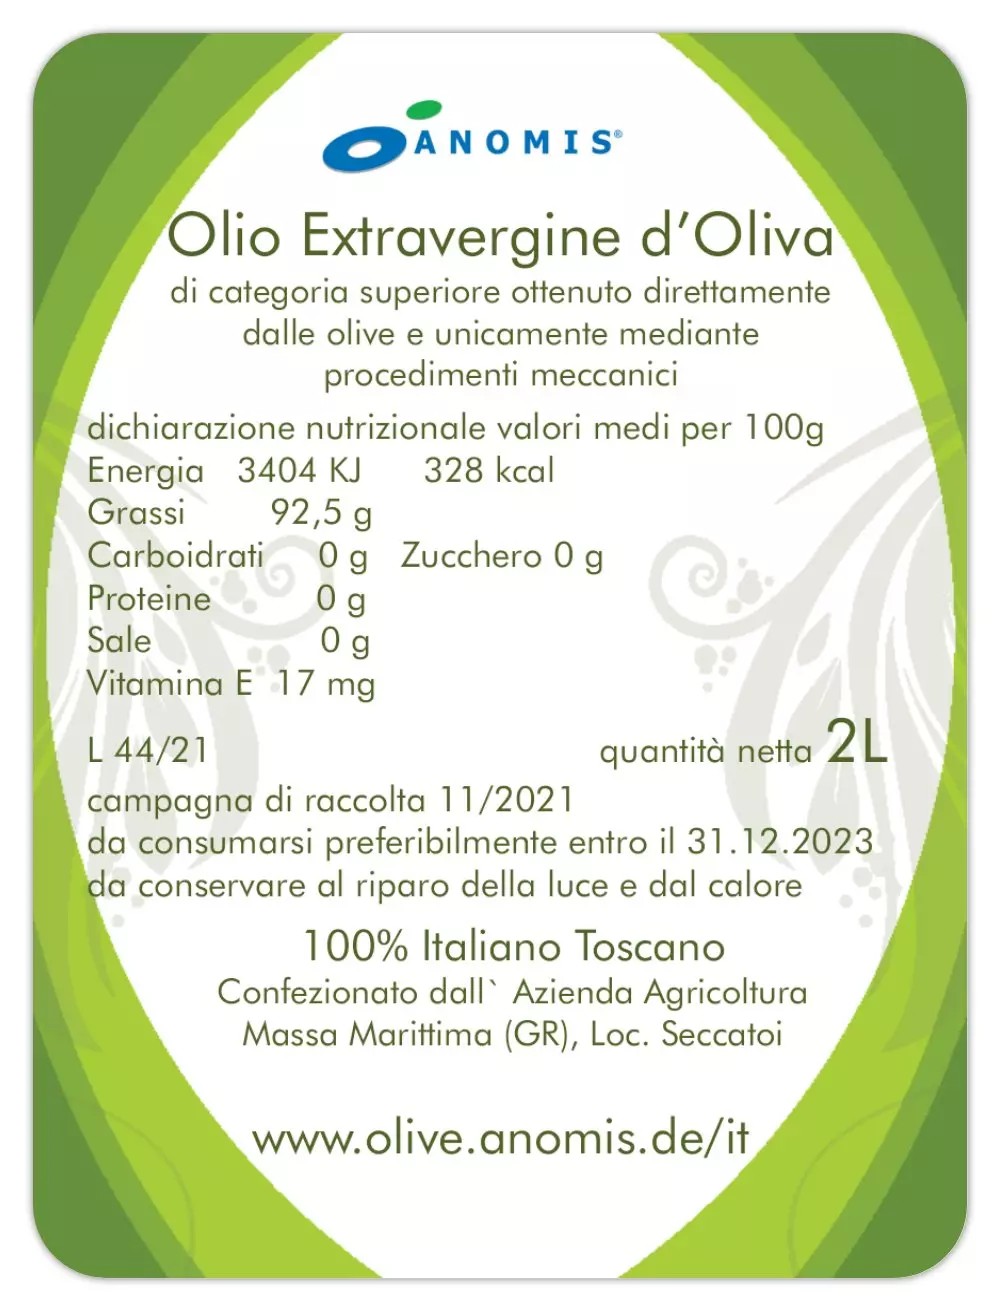 Olio Extravergine di Oliva - im 2 Liter Kanister - für Salat und Brot, Bruschetta -  100% Italiano Toscano